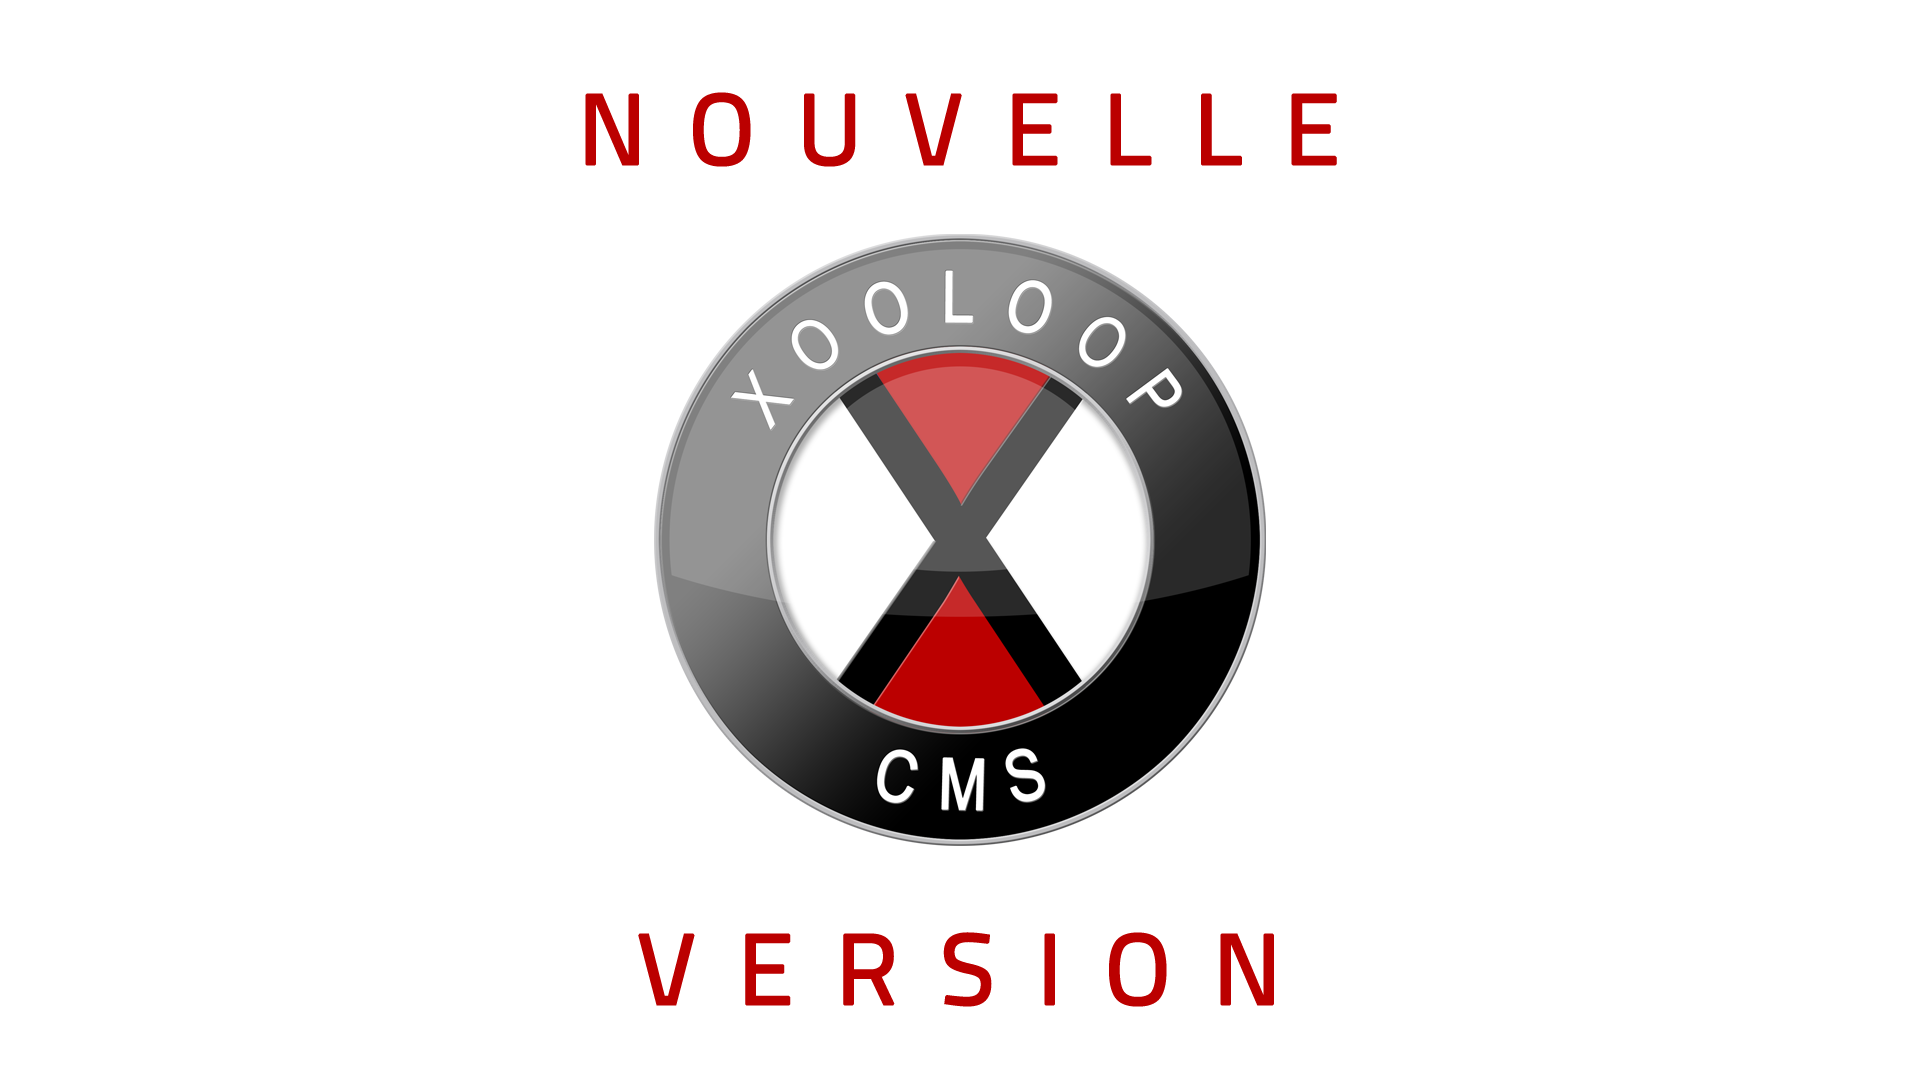 Nouvelle version de Xooloop CMS (v3.7.4)